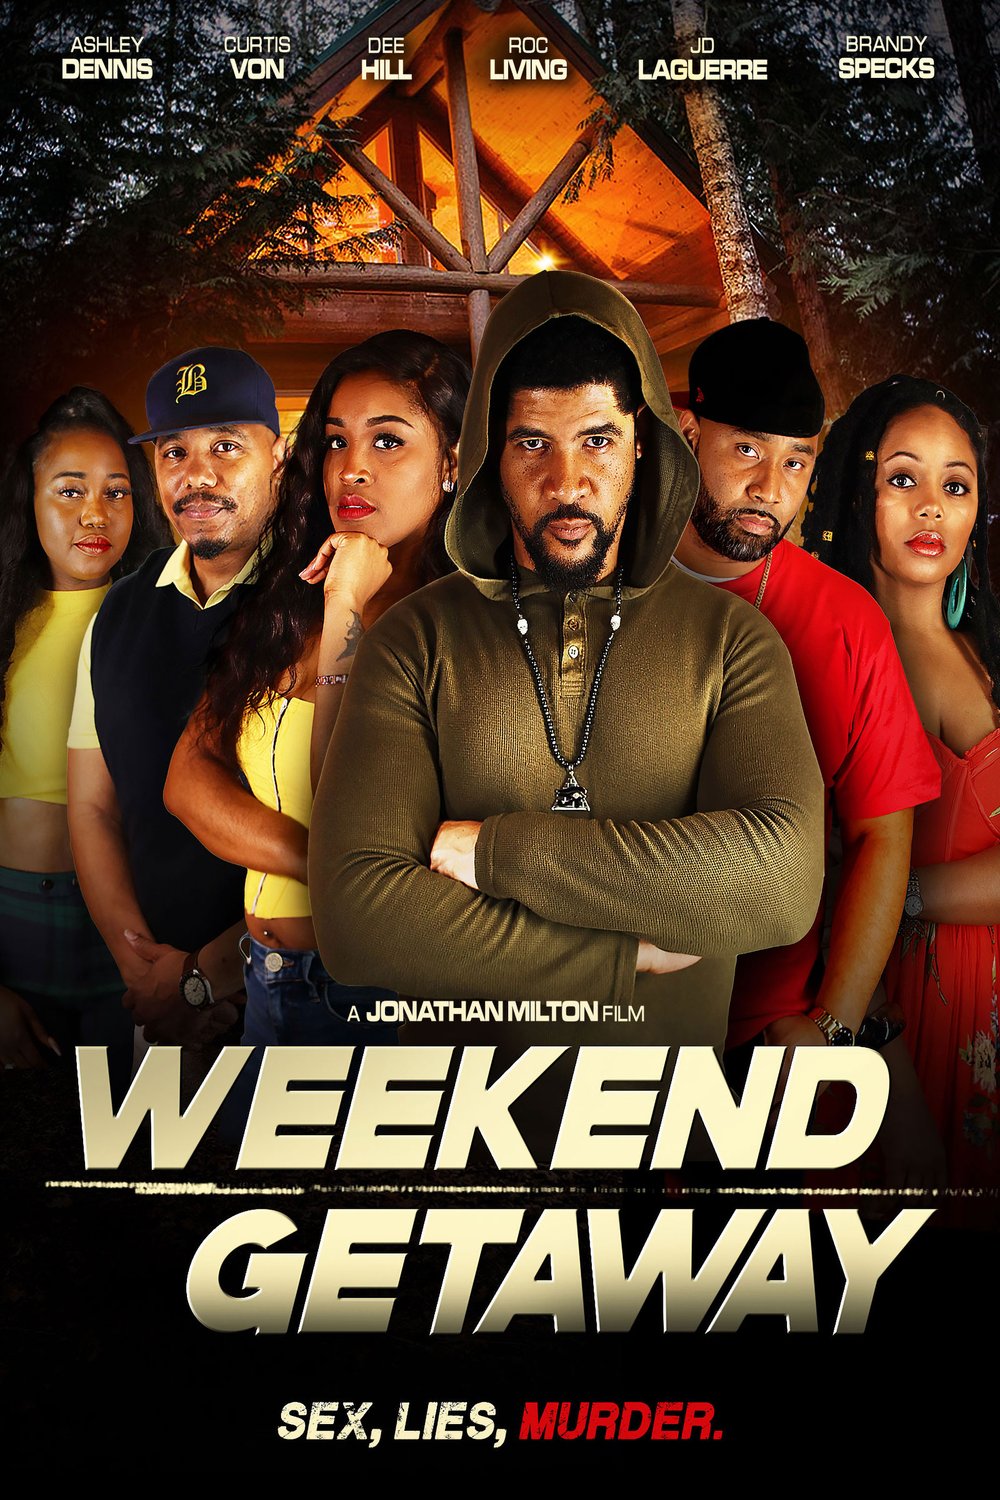 Poster of the movie Weekend Getaway